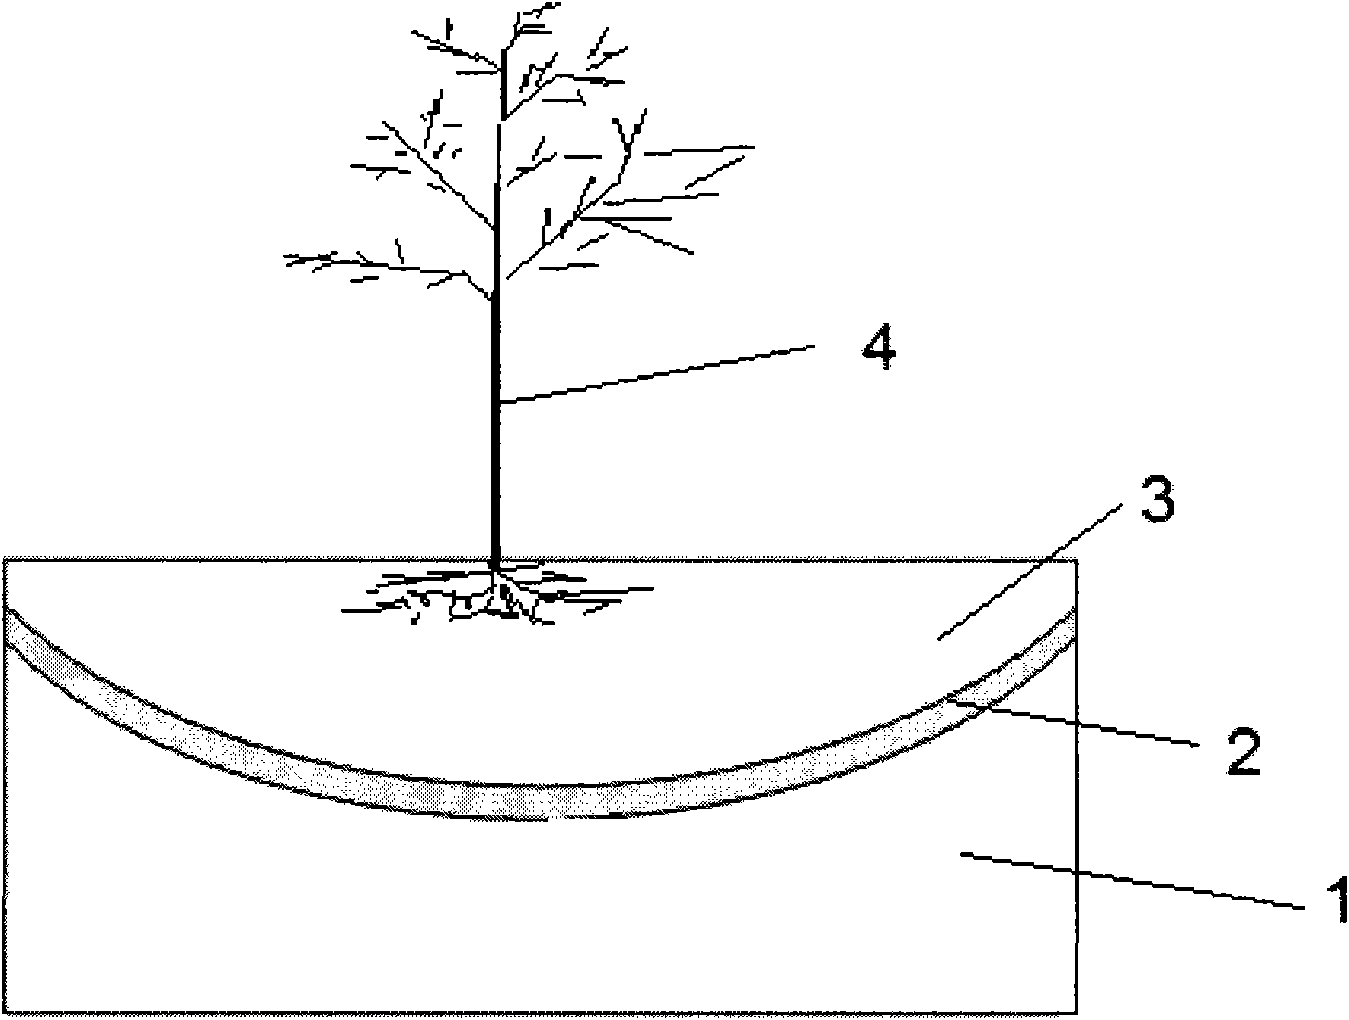 Desert planting structure, desert soil amendment method and planting method